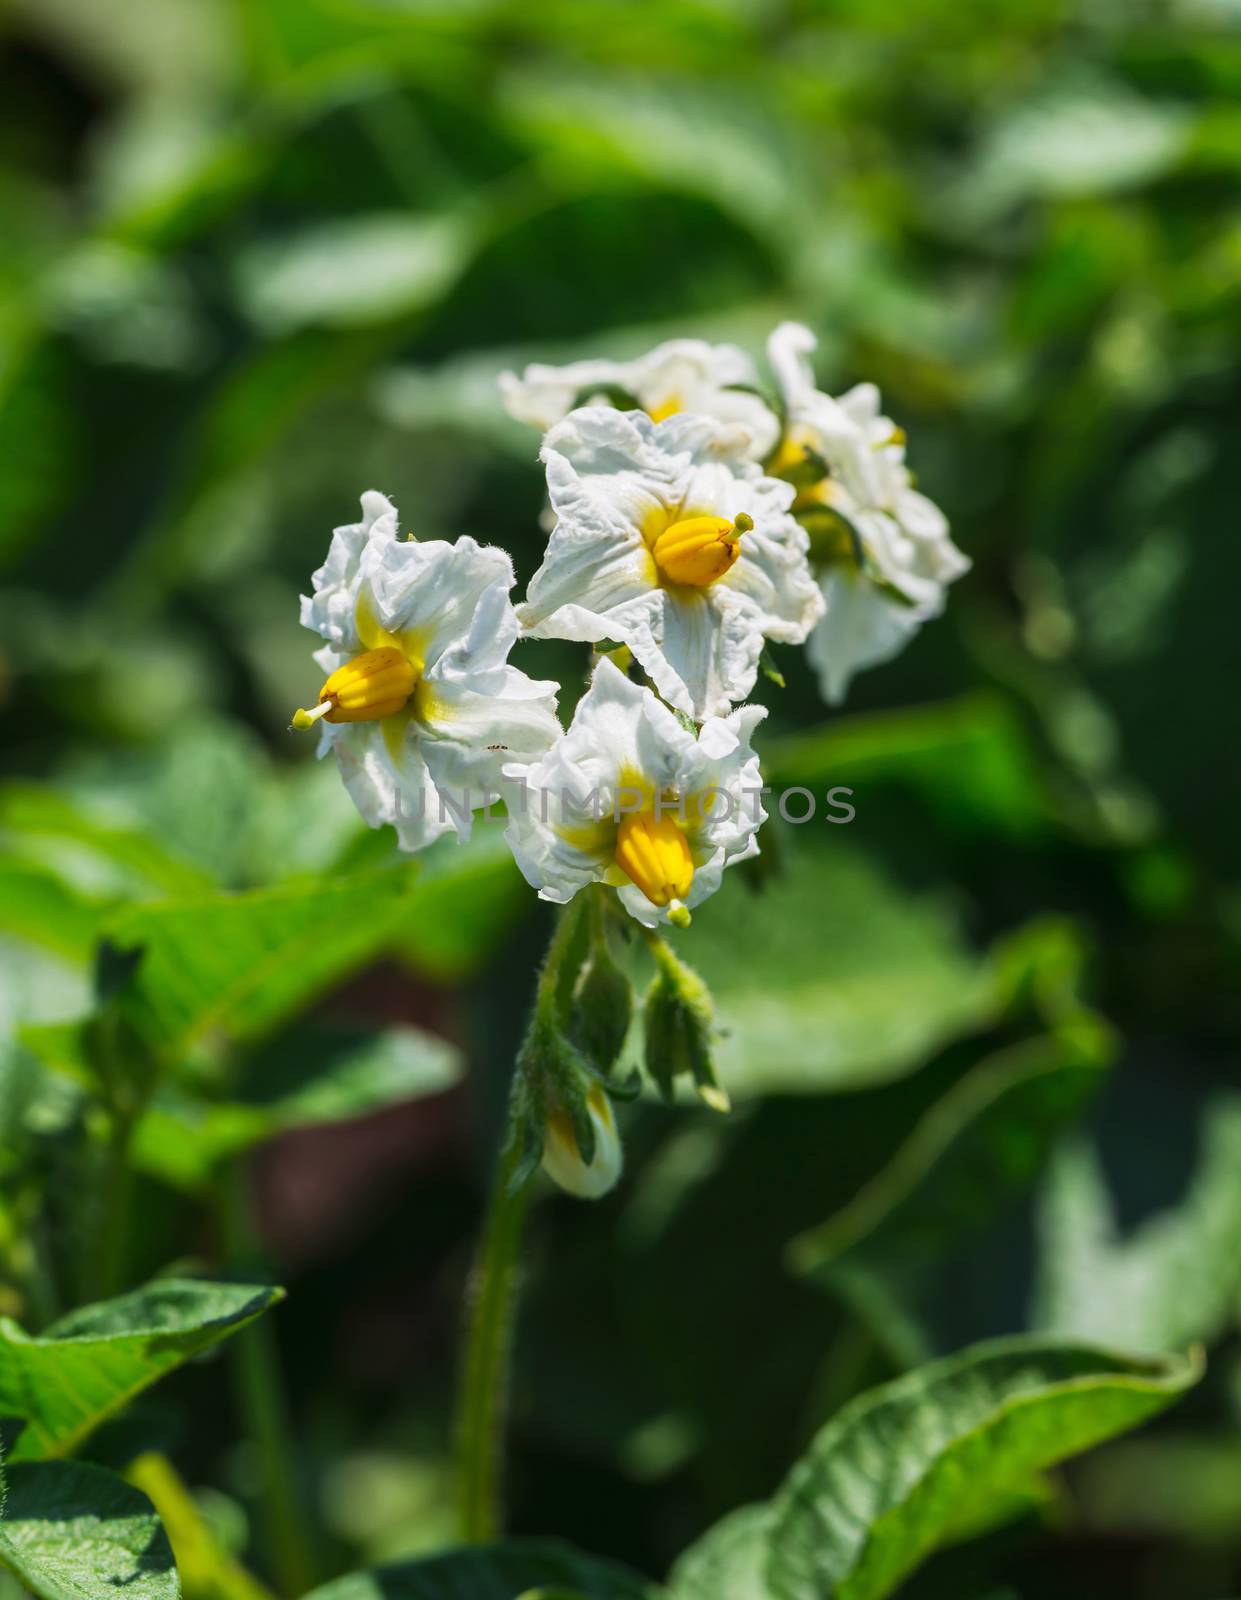 Potato bush blooming with white flower by oleg_zhukov